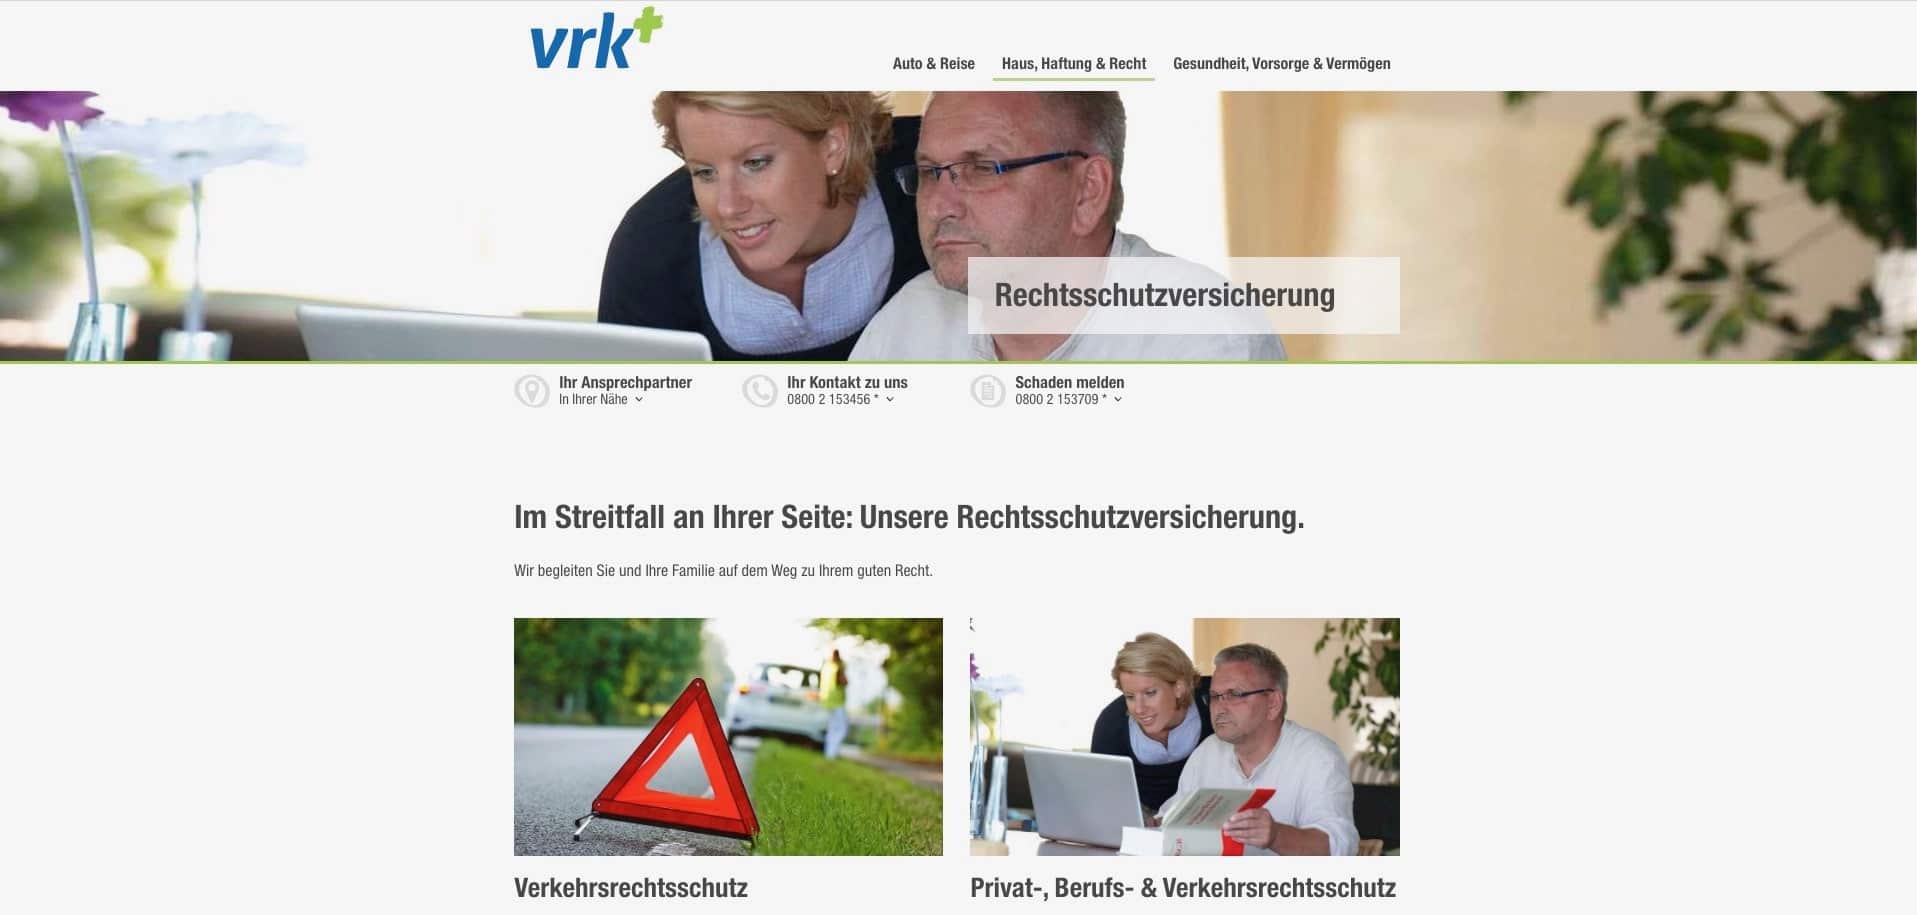 Webseite der Bruderhilfe (VRK) Rechtsschutzversicherung